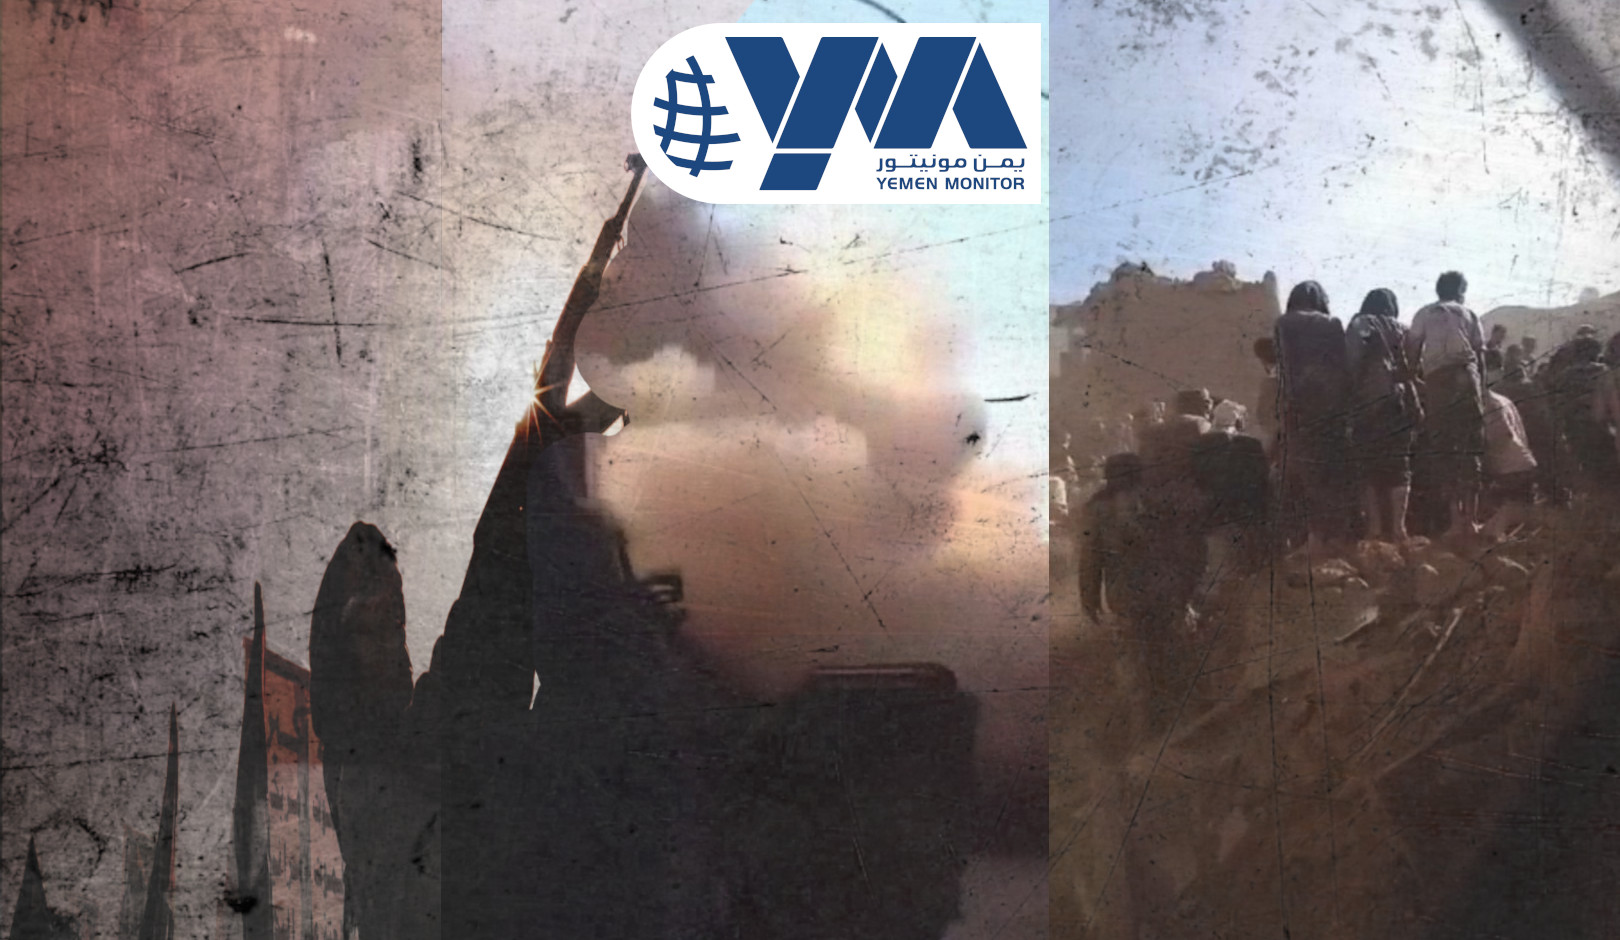 125 منظمة يمنية تصف جريمة الحوثيين في رداع “بالشنيعة والمروعة”